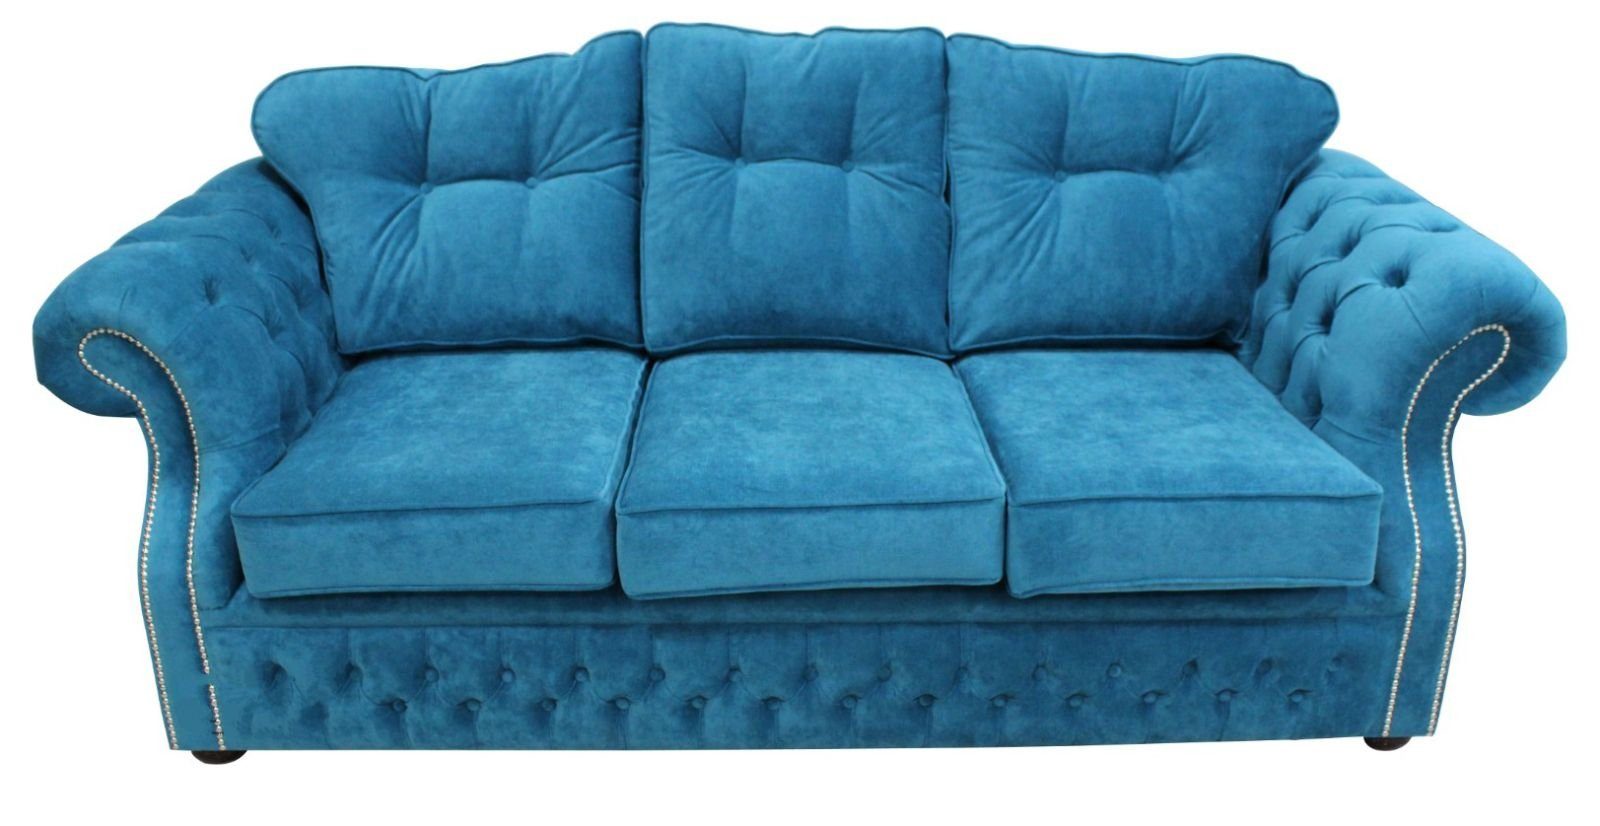 Sofa JVmoebel Europe Polster in Blauer Wohnzimmermöbel Design, Chesterfield Sofa Made luxus